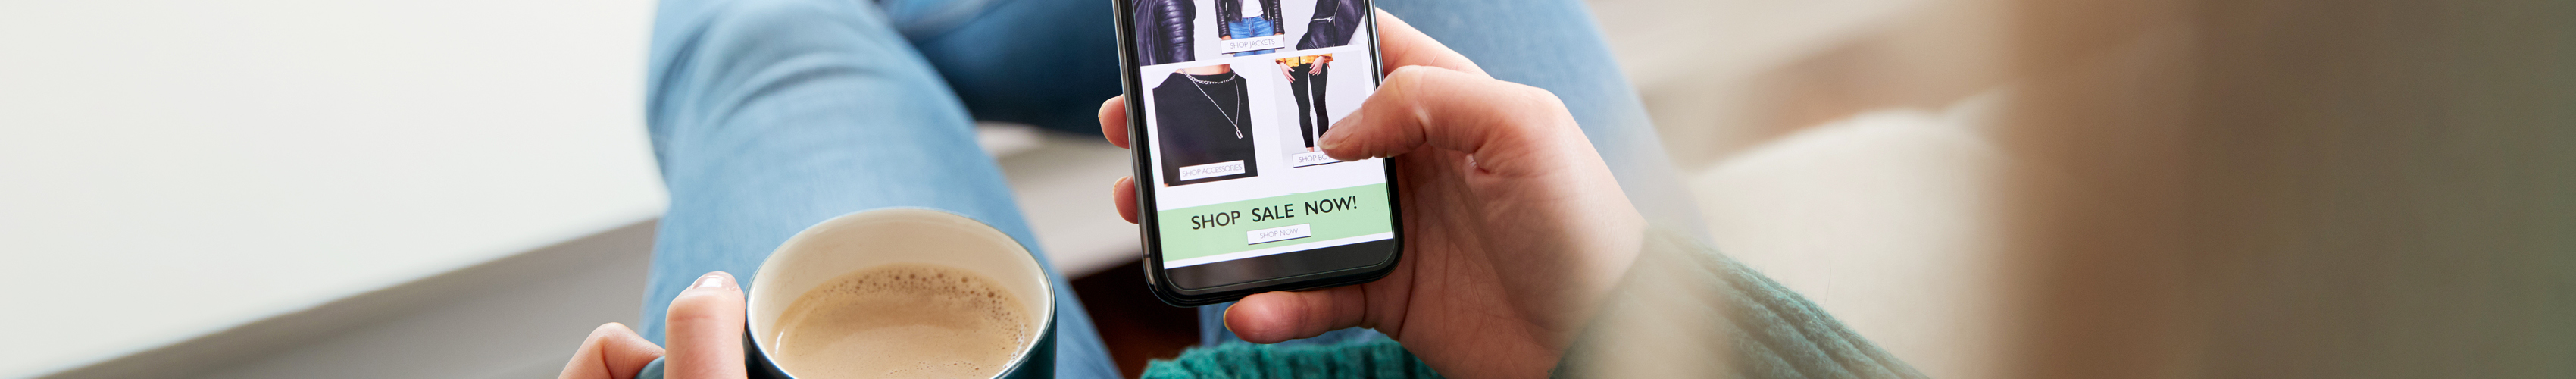 Shopper sitzt bequem auf einem Sofa und scrollt auf dem Smartphone durch einen Mode Onlineshop